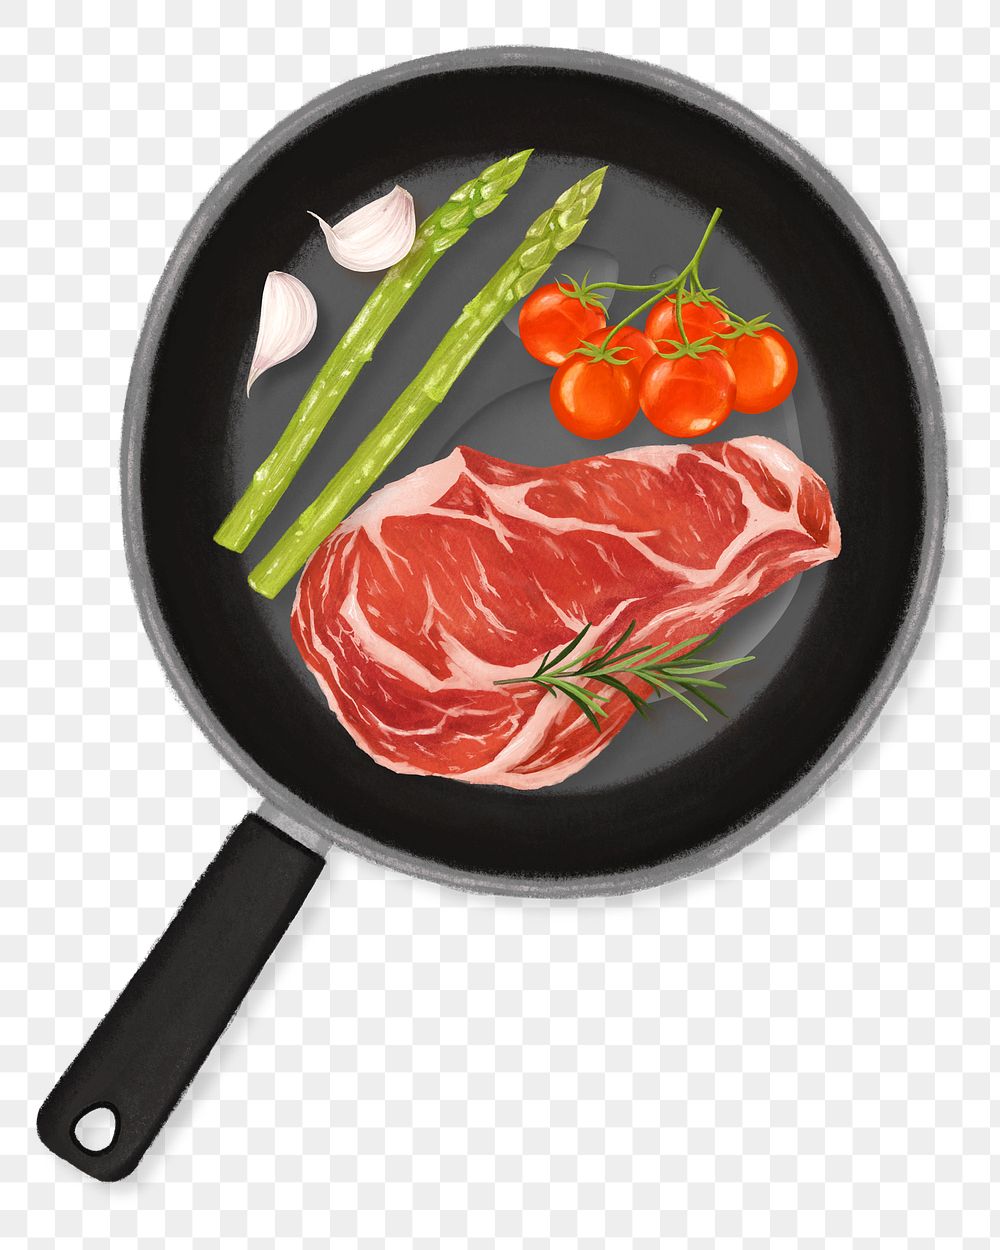 PNG Homemade beef steak, food illustration, transparent background